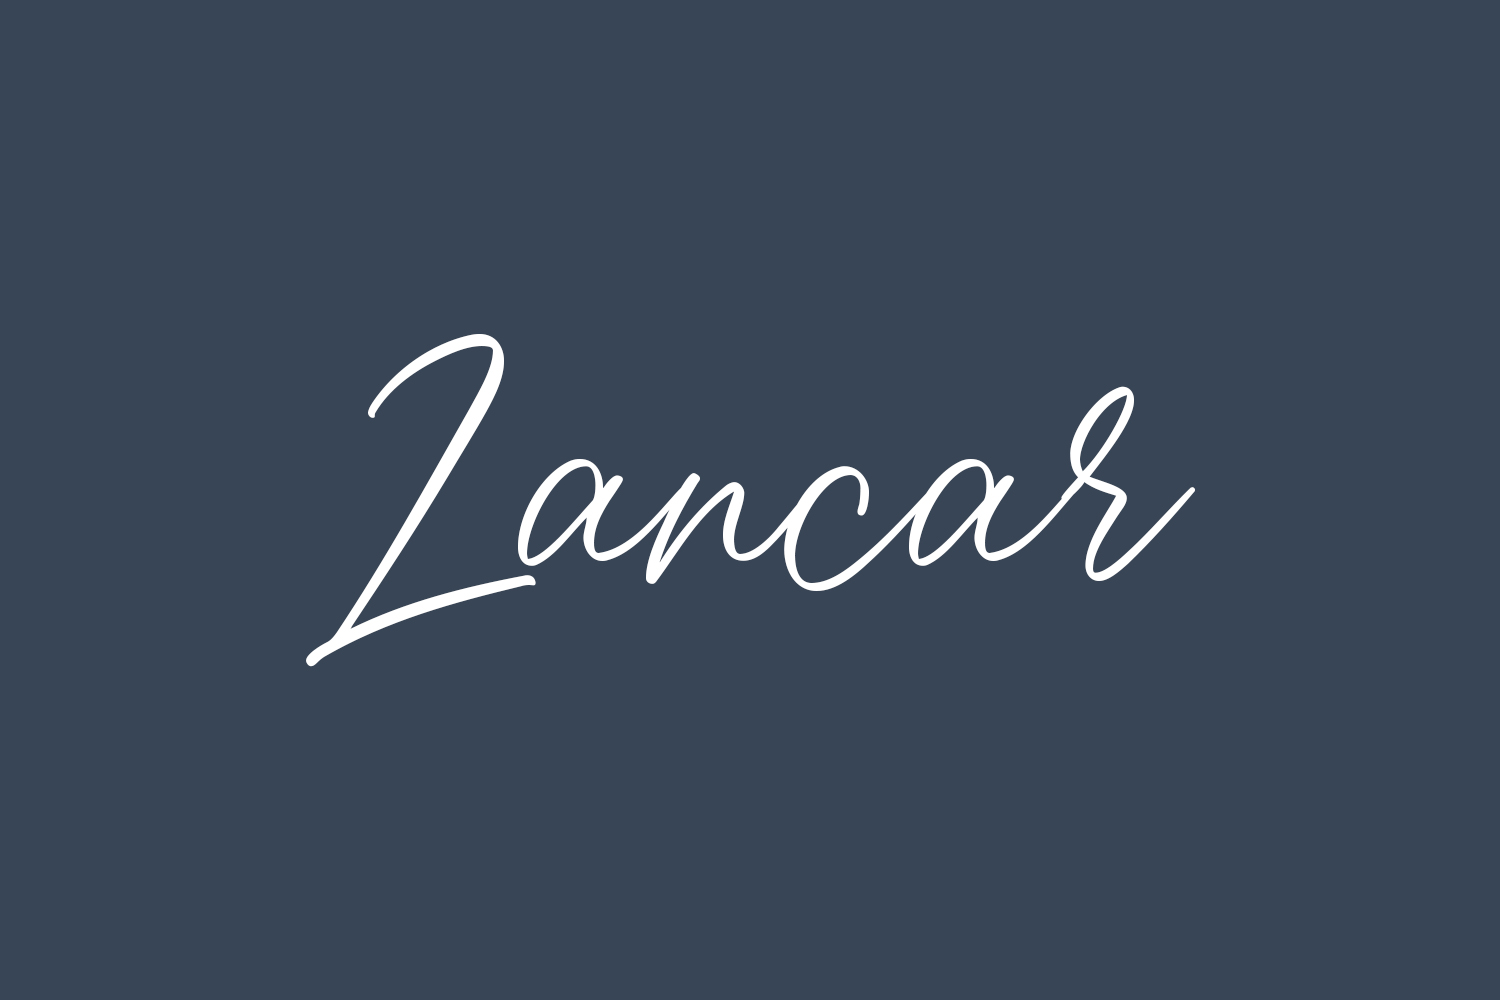 Lancar Free Font